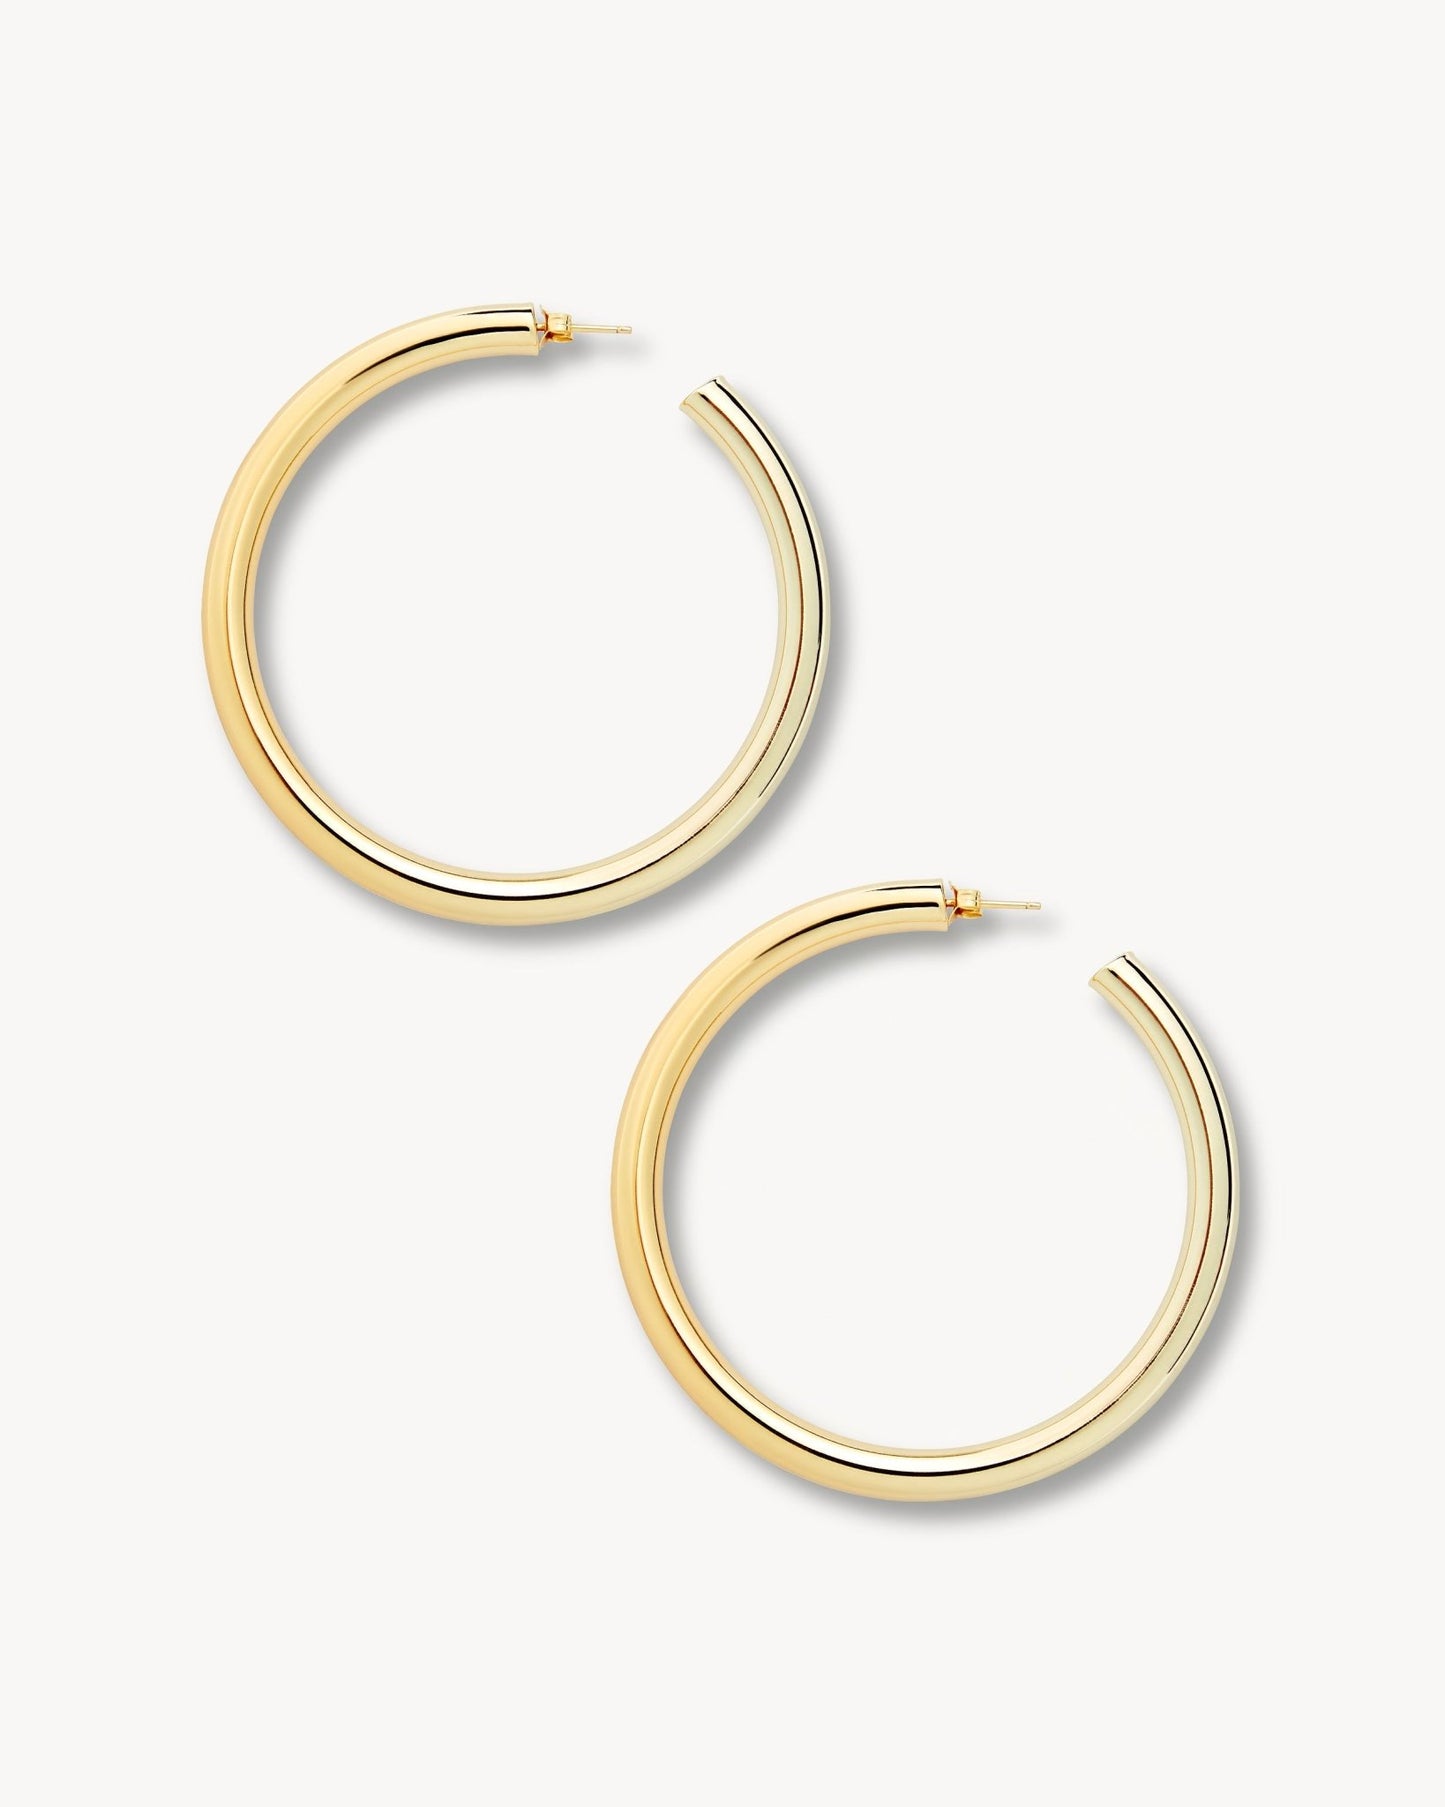 2.5" Perfect Hoop Earrings in Gold